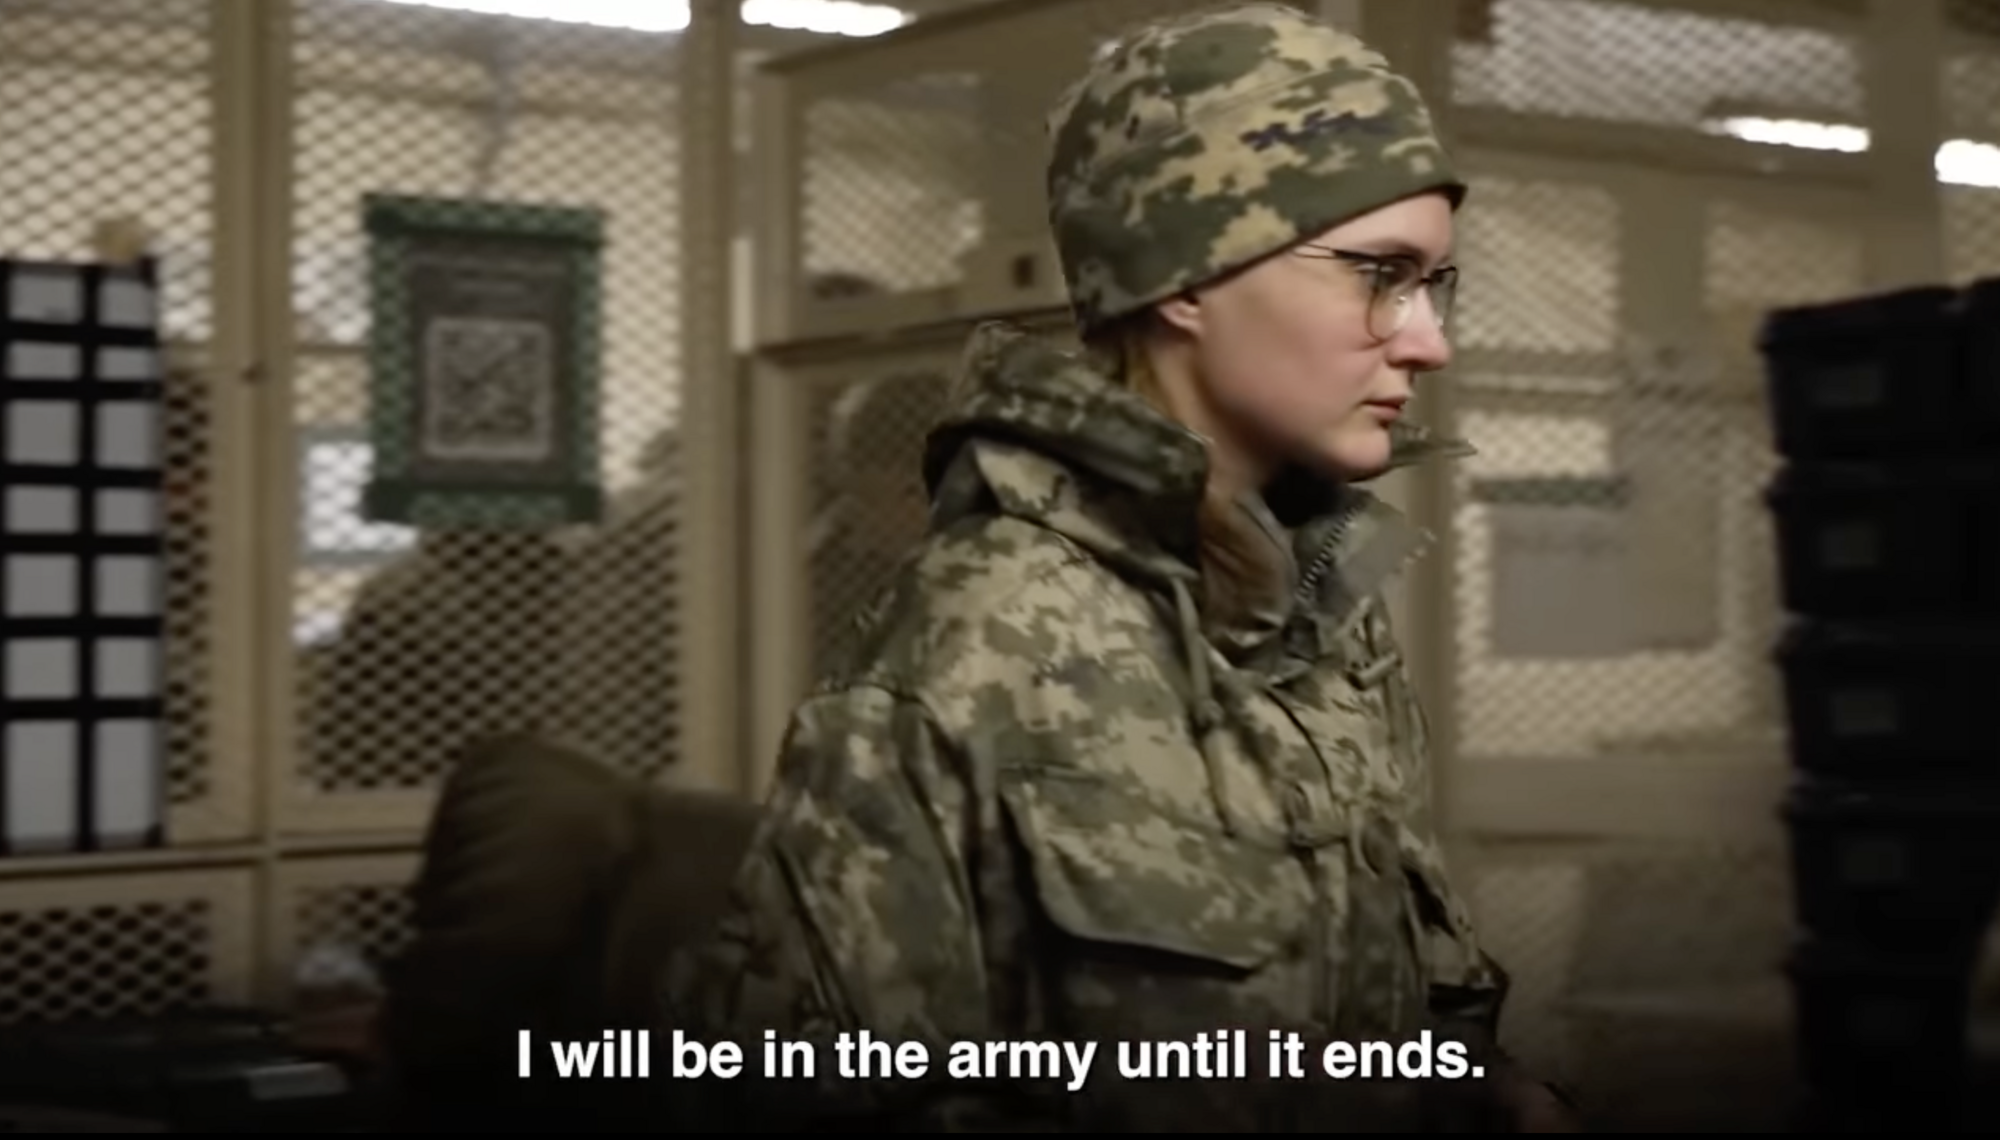 "Украина вдохновила мир": военнослужащая ВСУ рассказала о влиянии войны на ее жизнь. Видео